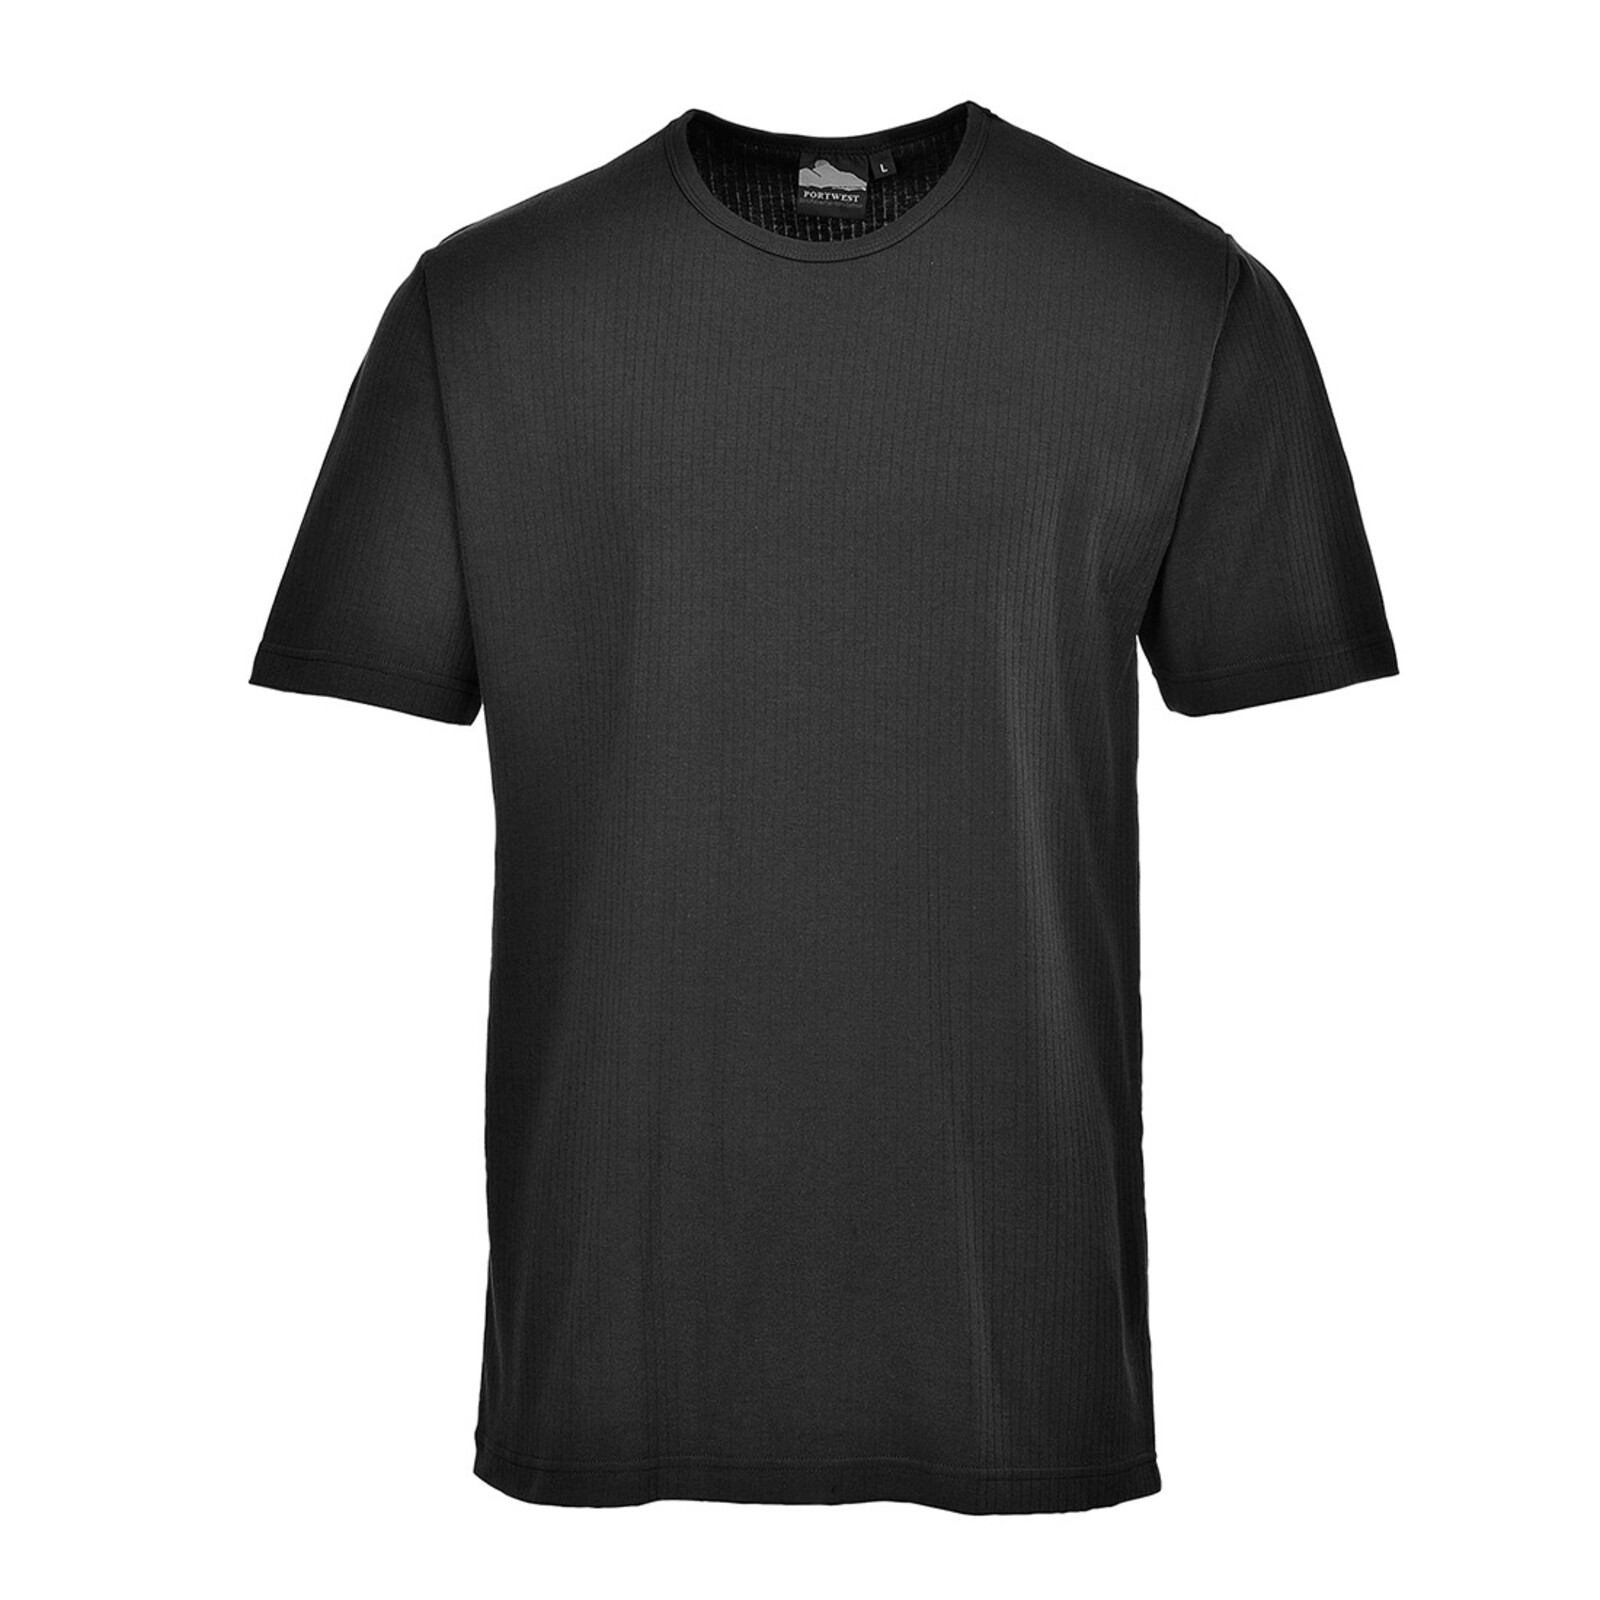 Pánske termo tričko s krátkym rukávom Portwest Thermal B121 - veľkosť: M, farba: čierna